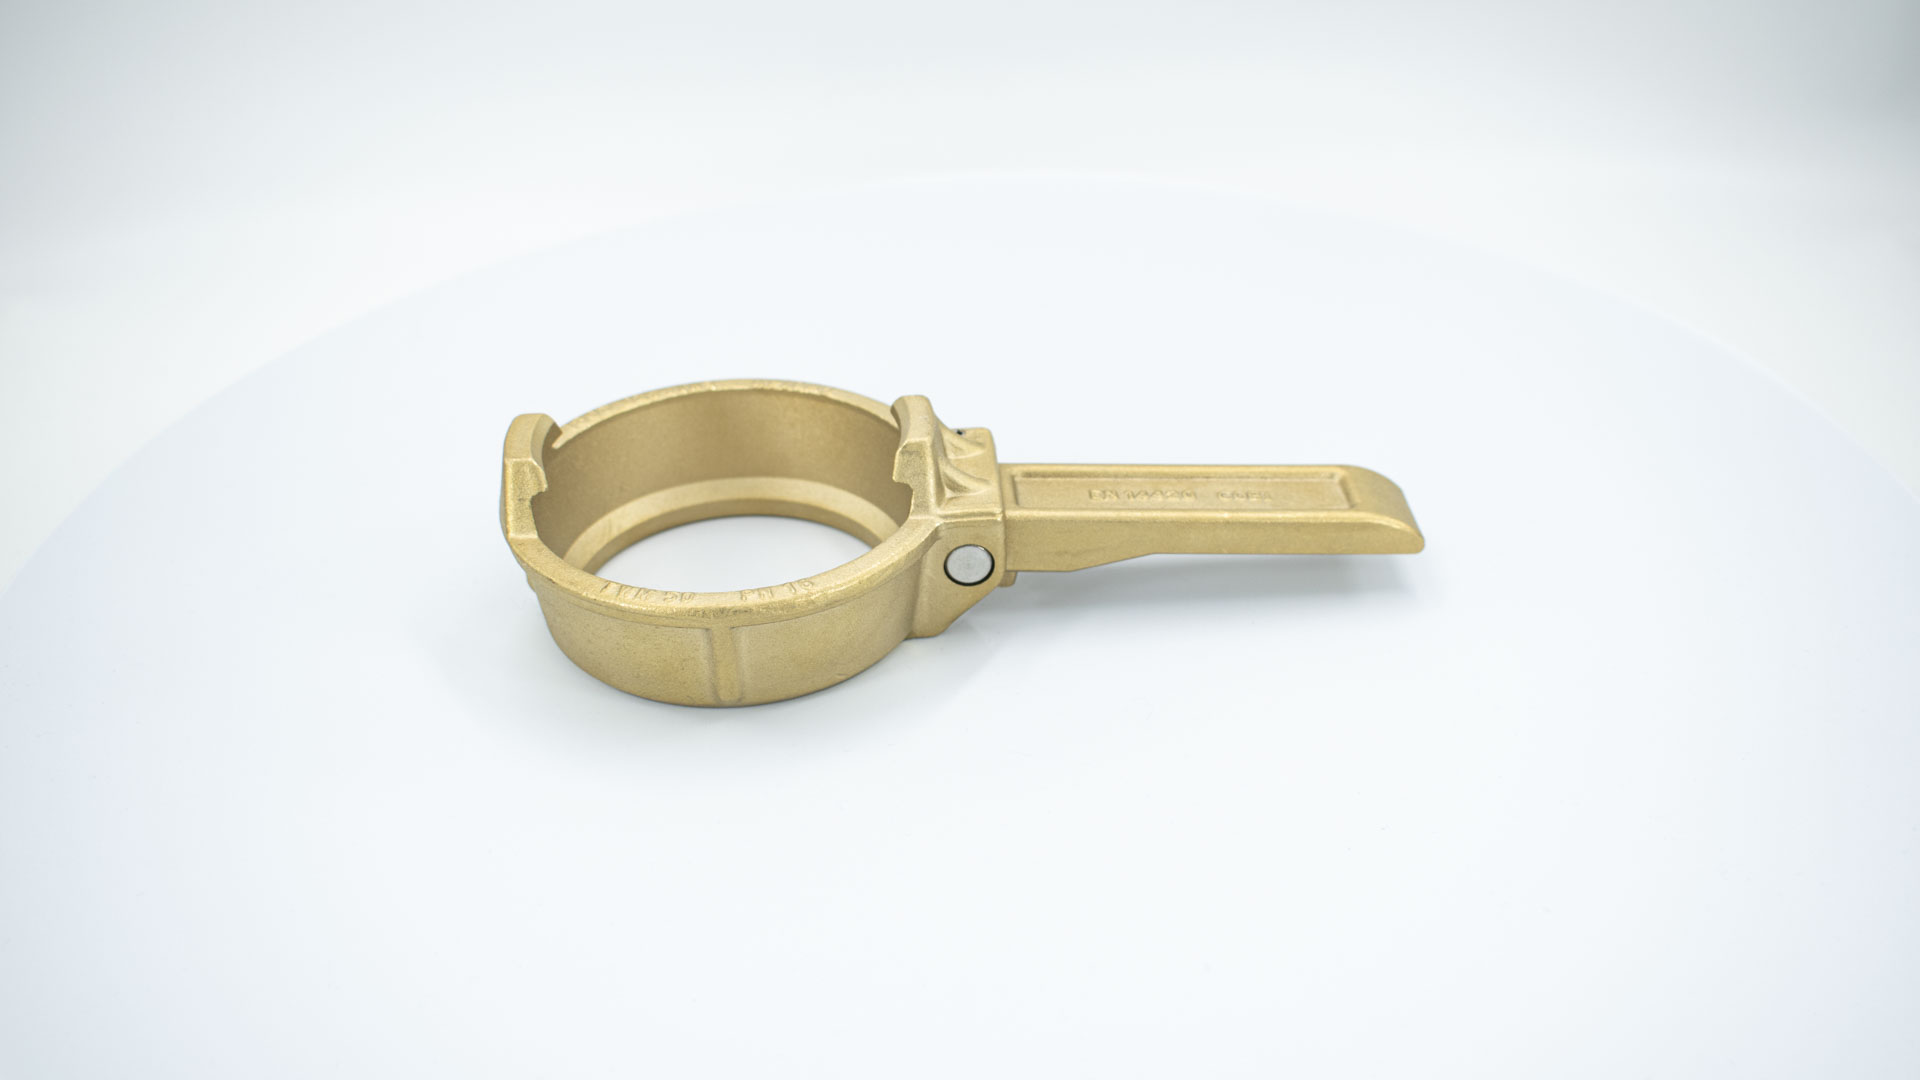 Pierścień zamykający z dźwignią wykonany z mosiądzu zgodnie z normą DIN EN 14420-6 (DIN 28450)